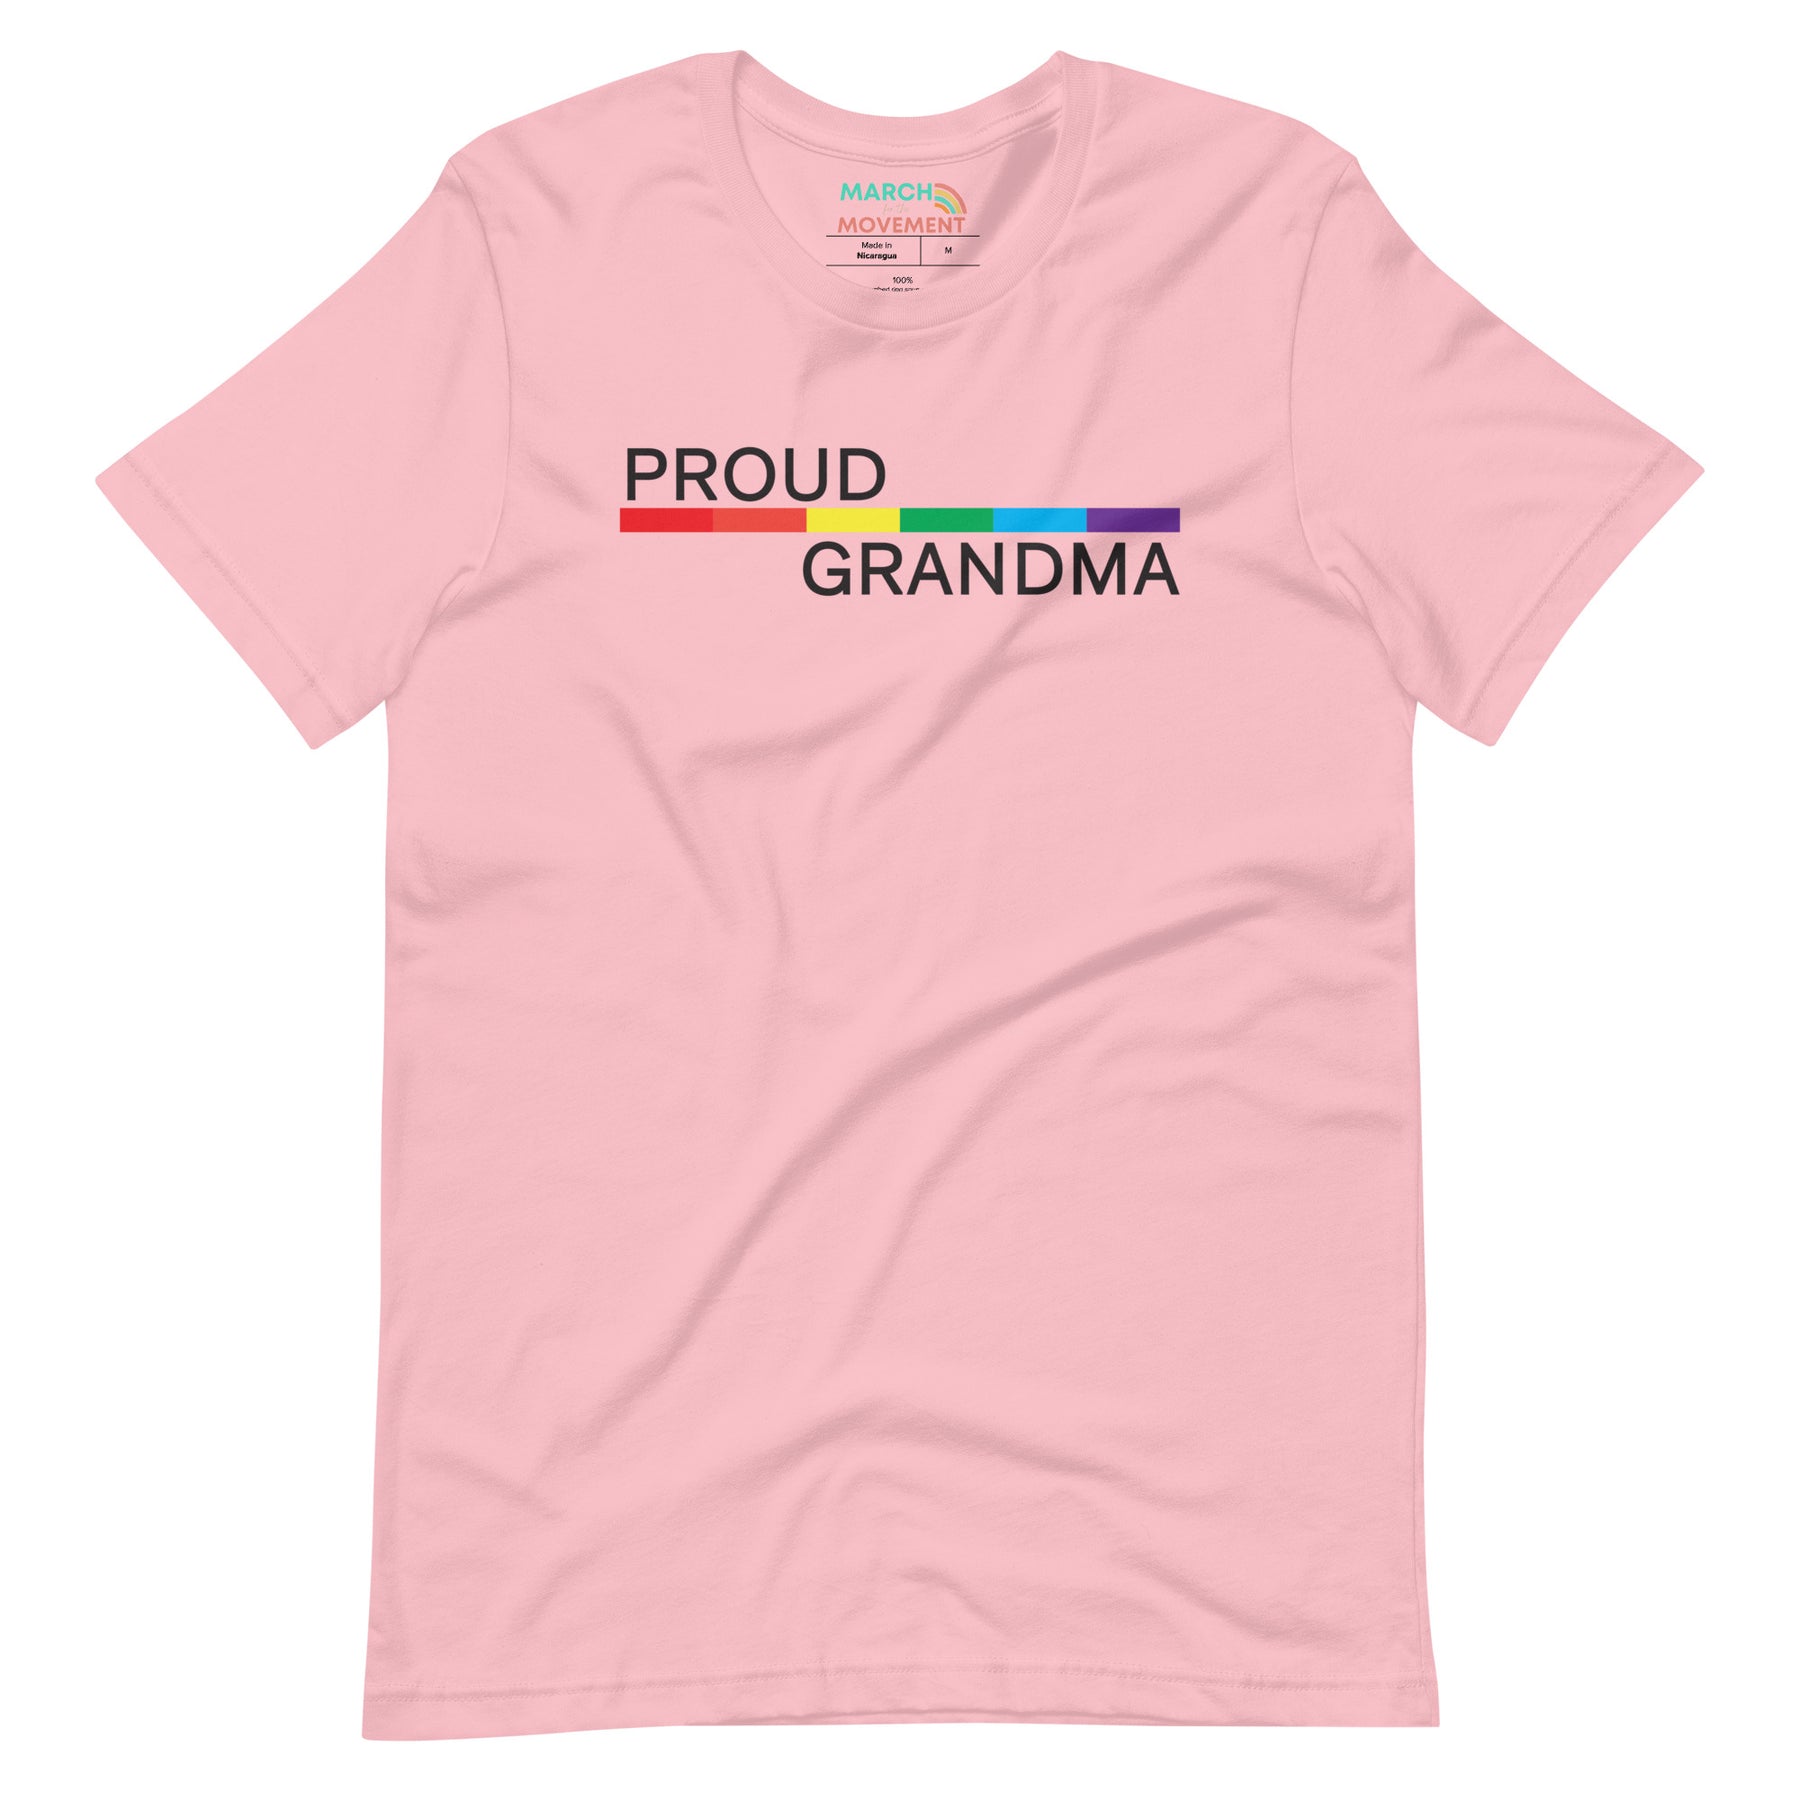 Proud Grandma T-Shirt